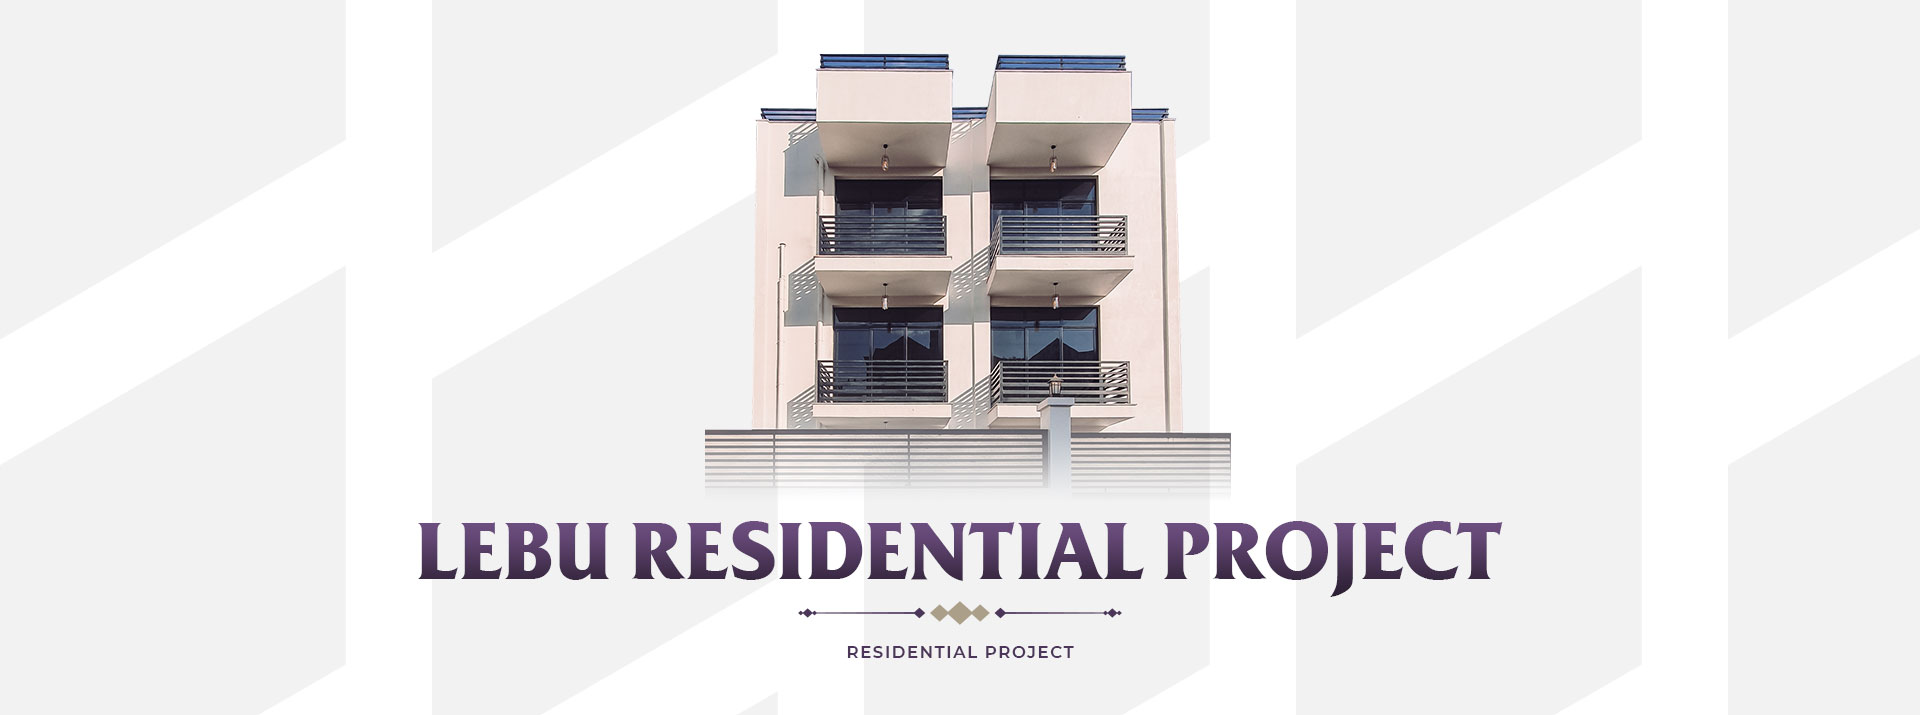 Lebu-Residential-Project-Slider-Photo-1.jpg